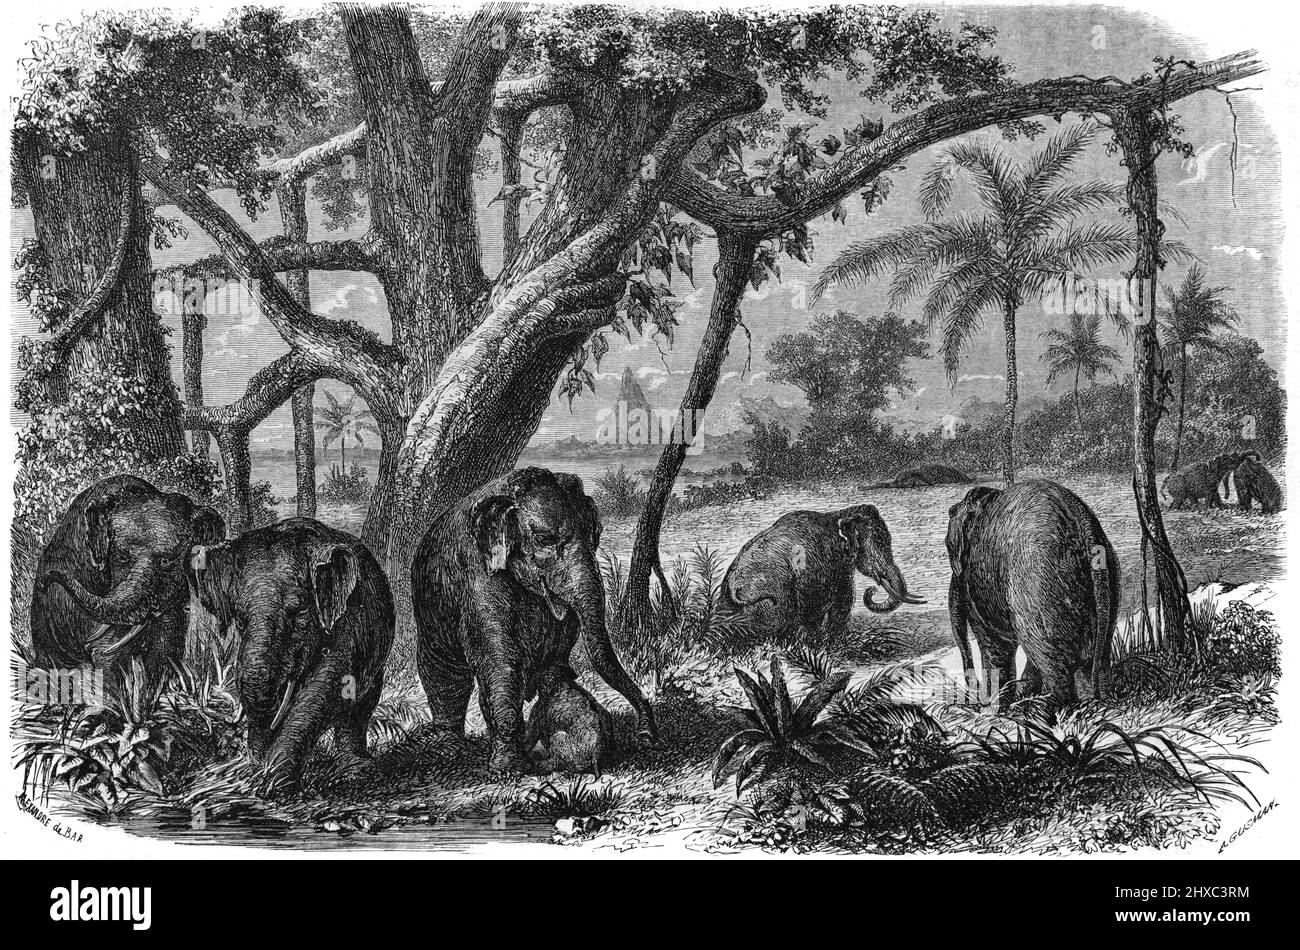 Eléphants sri lankais, éléphants maximus ou éléphants asiatiques au Sri Lanka ou au Ceylan. Illustration ancienne ou gravure 1860. Banque D'Images